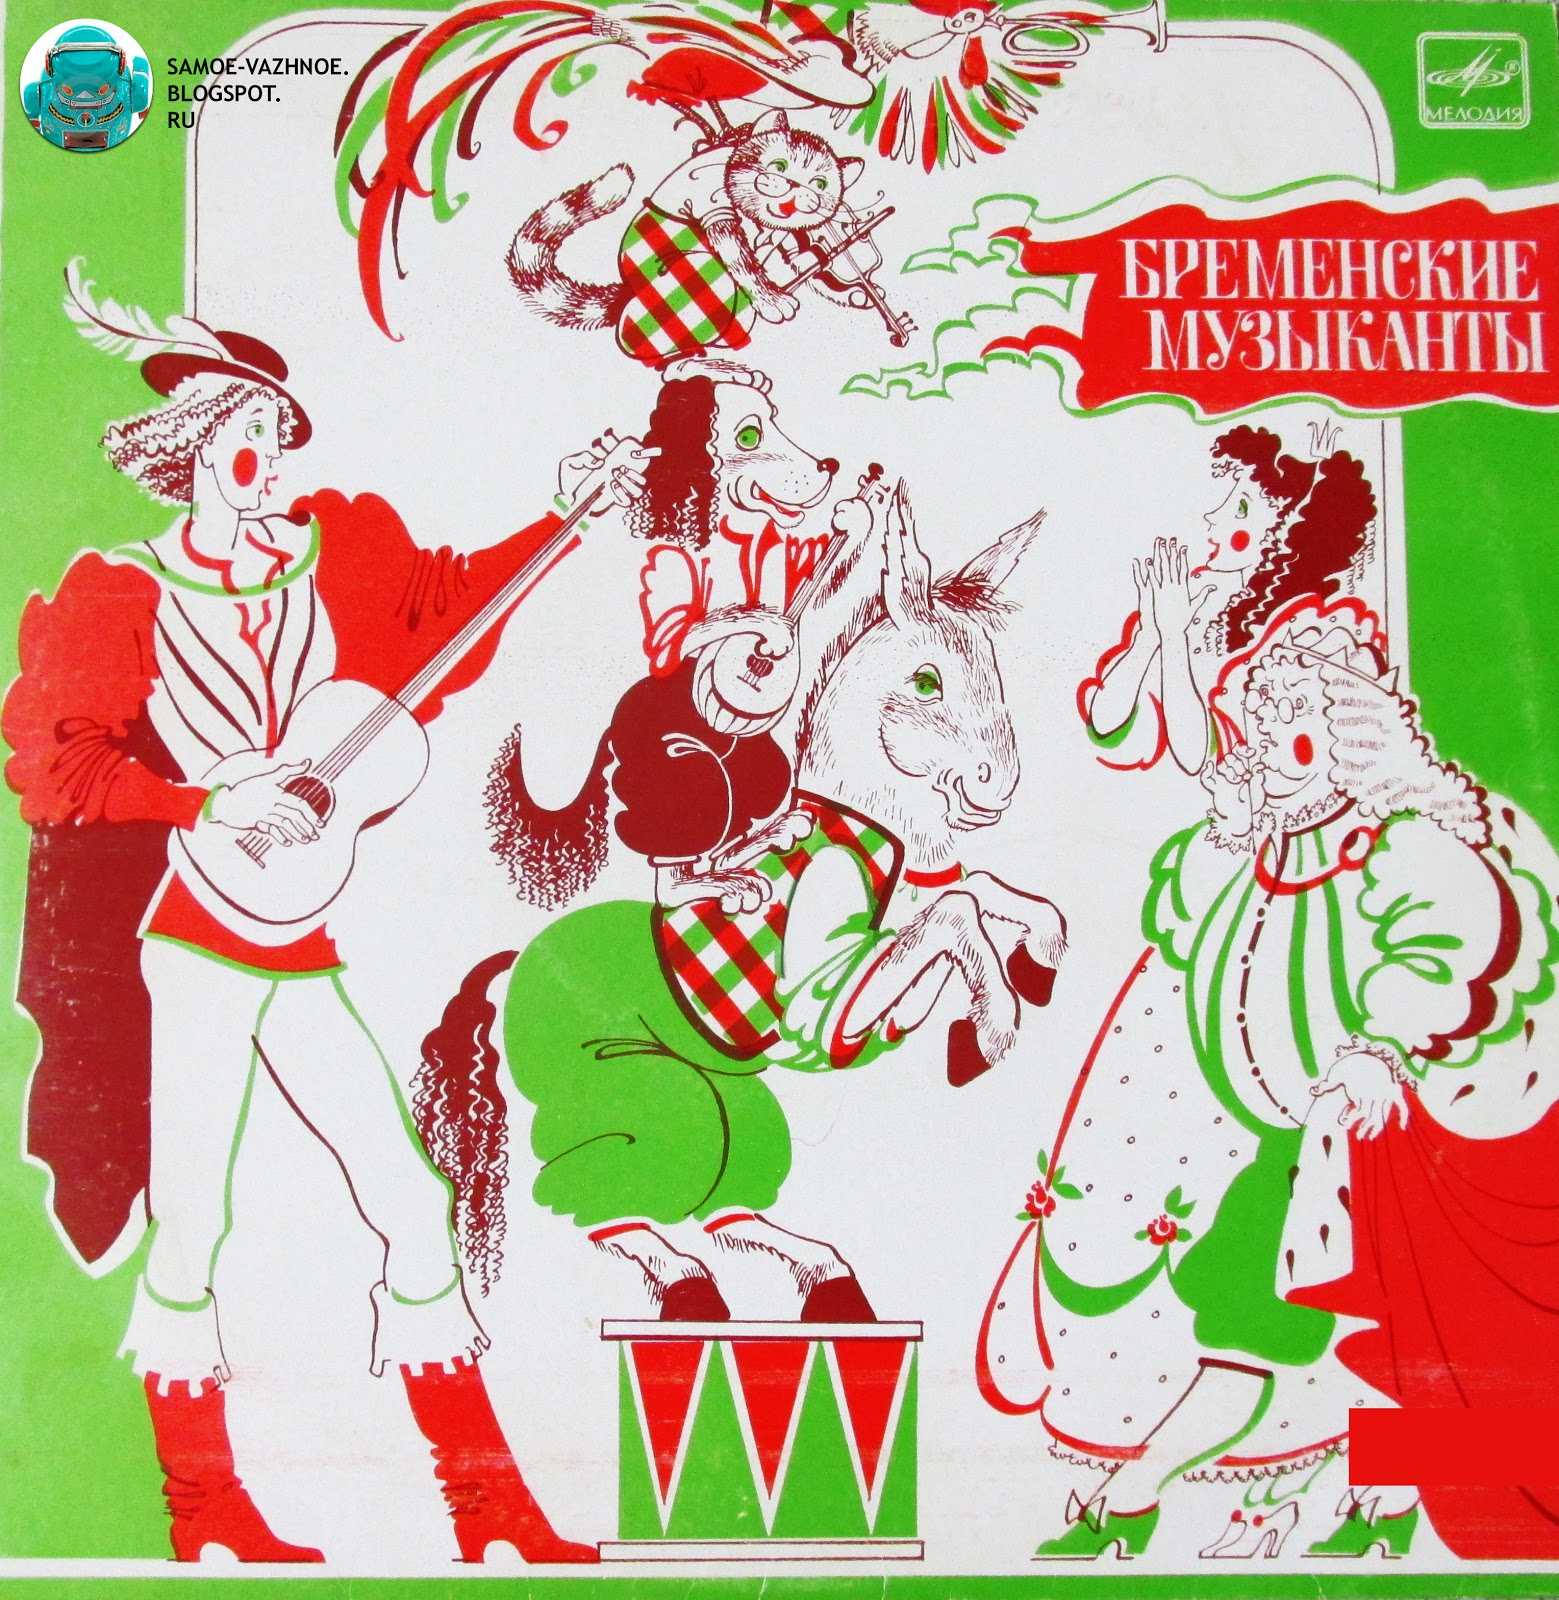 Слушать советские сказки на пластинках: Самые популярные сказки со старых советских пластинок слушать онлайн